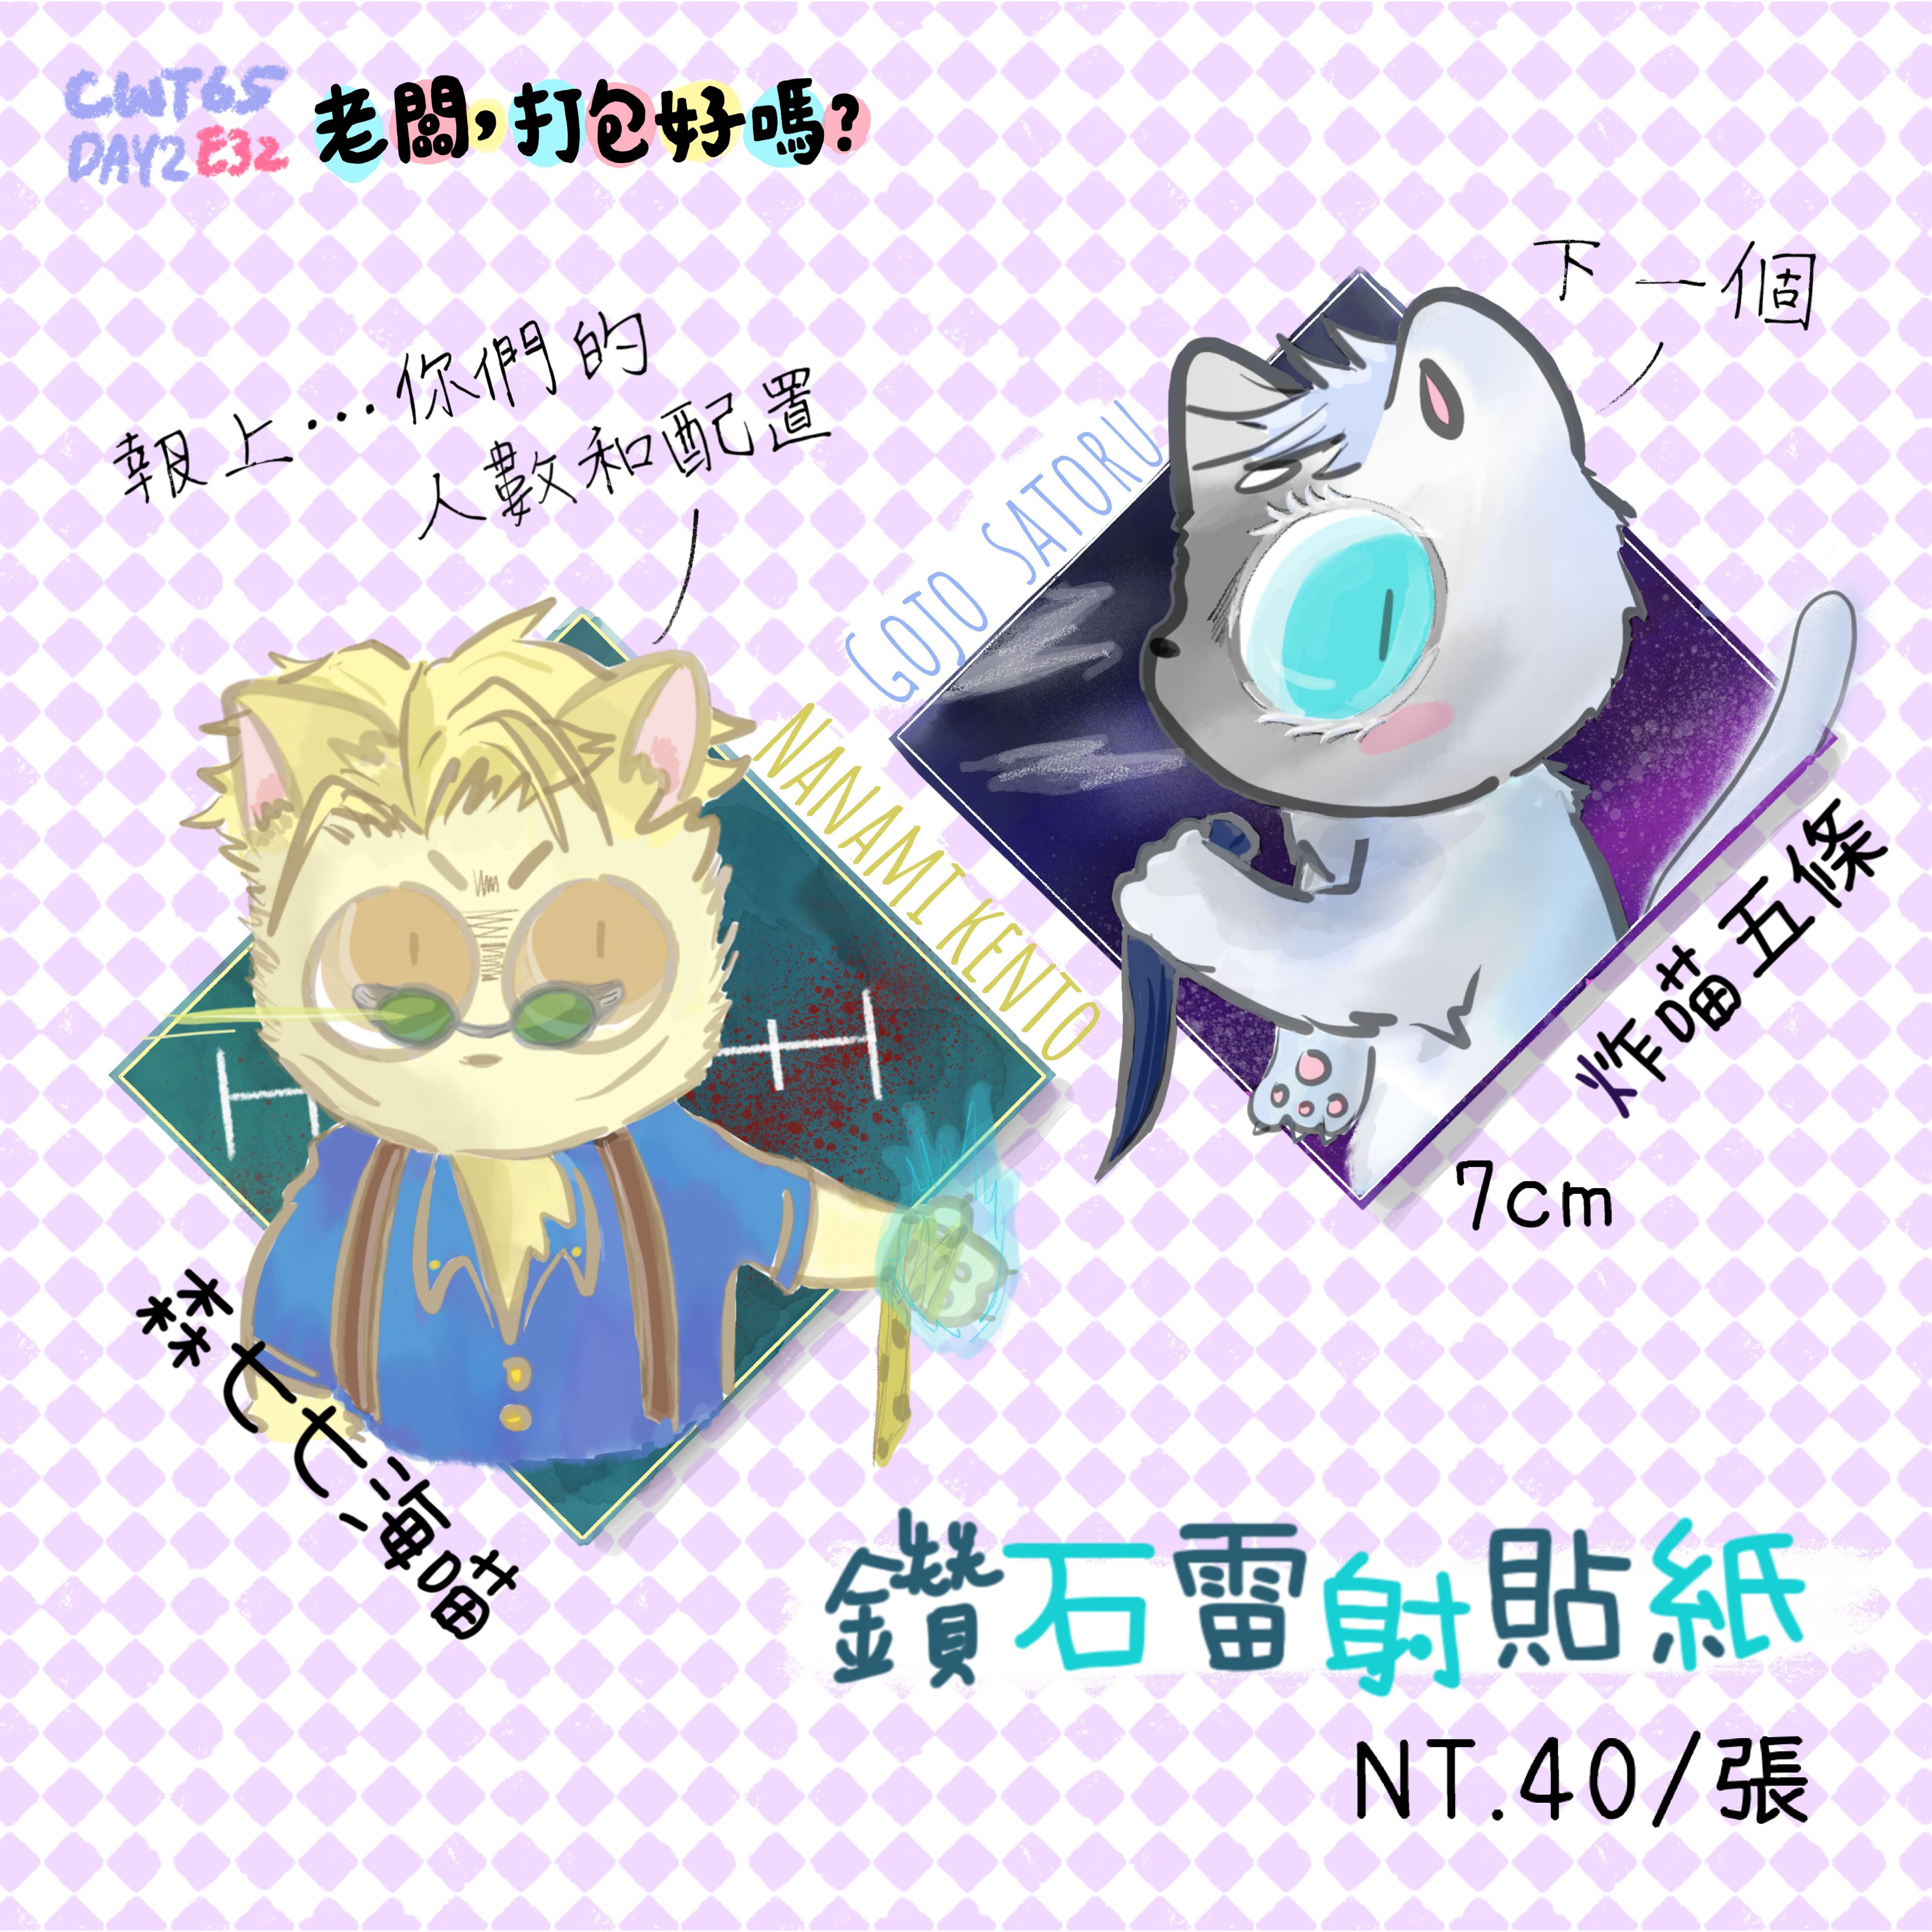 澀谷篇貓貓-鑽石雷射貼紙